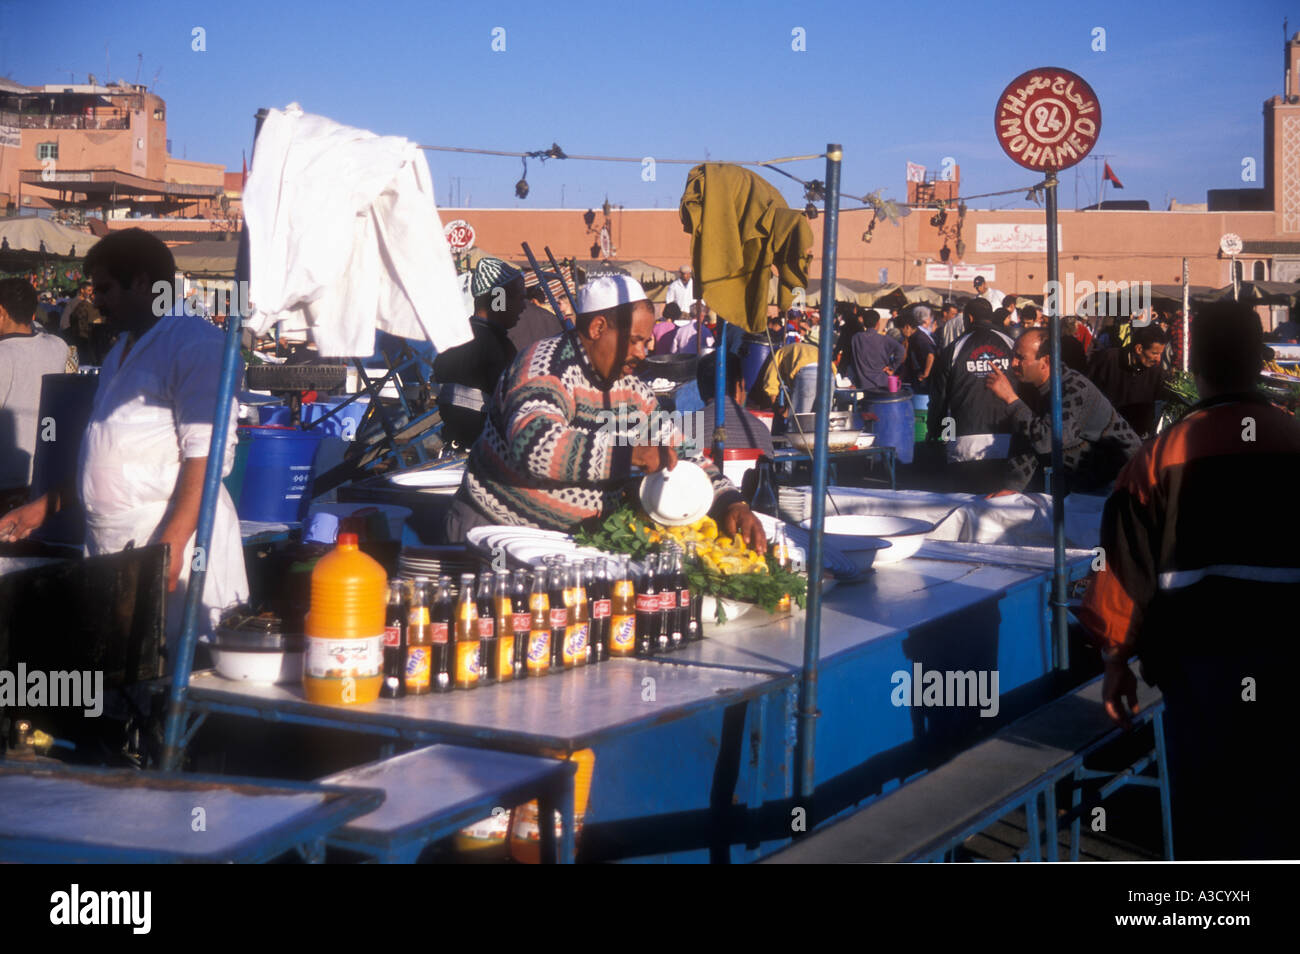 Obst trinken Stand auf dem belebten Markt am Platz Djemaa el Fna Marrakesch Marokko Stockfoto